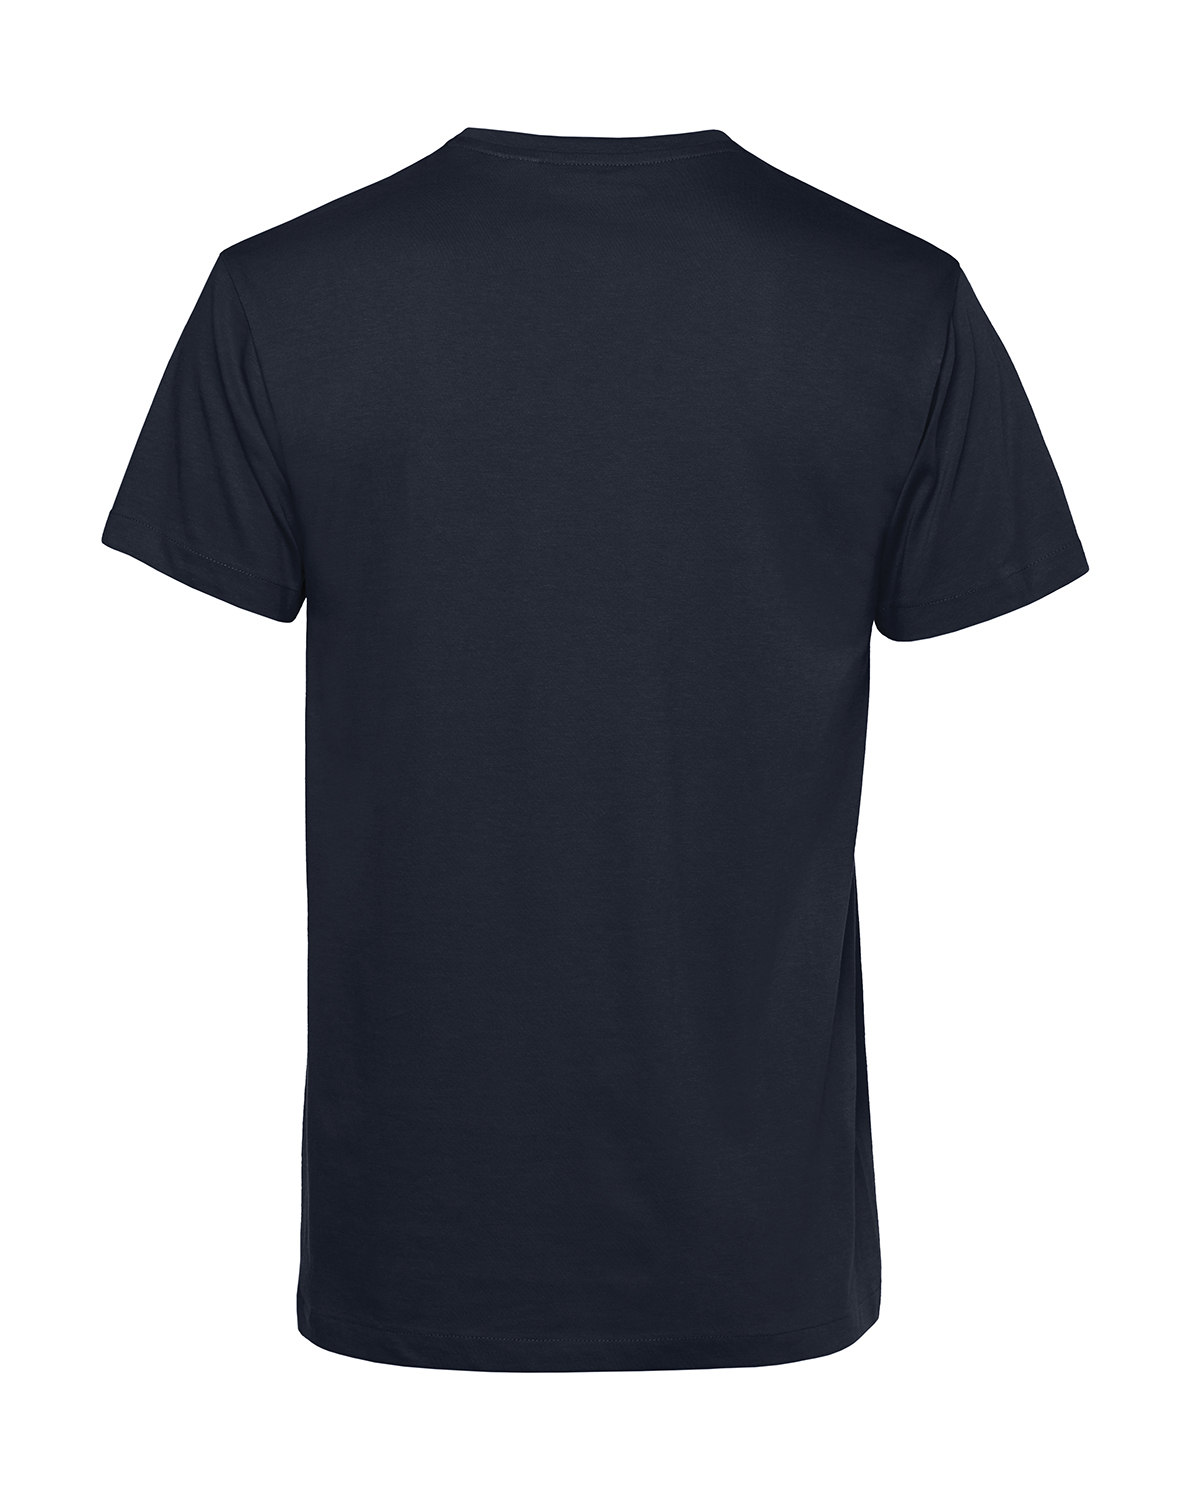 Nachhaltiges T-Shirt Herren 2Takt - Wenn Du keinen besitzt Trabi